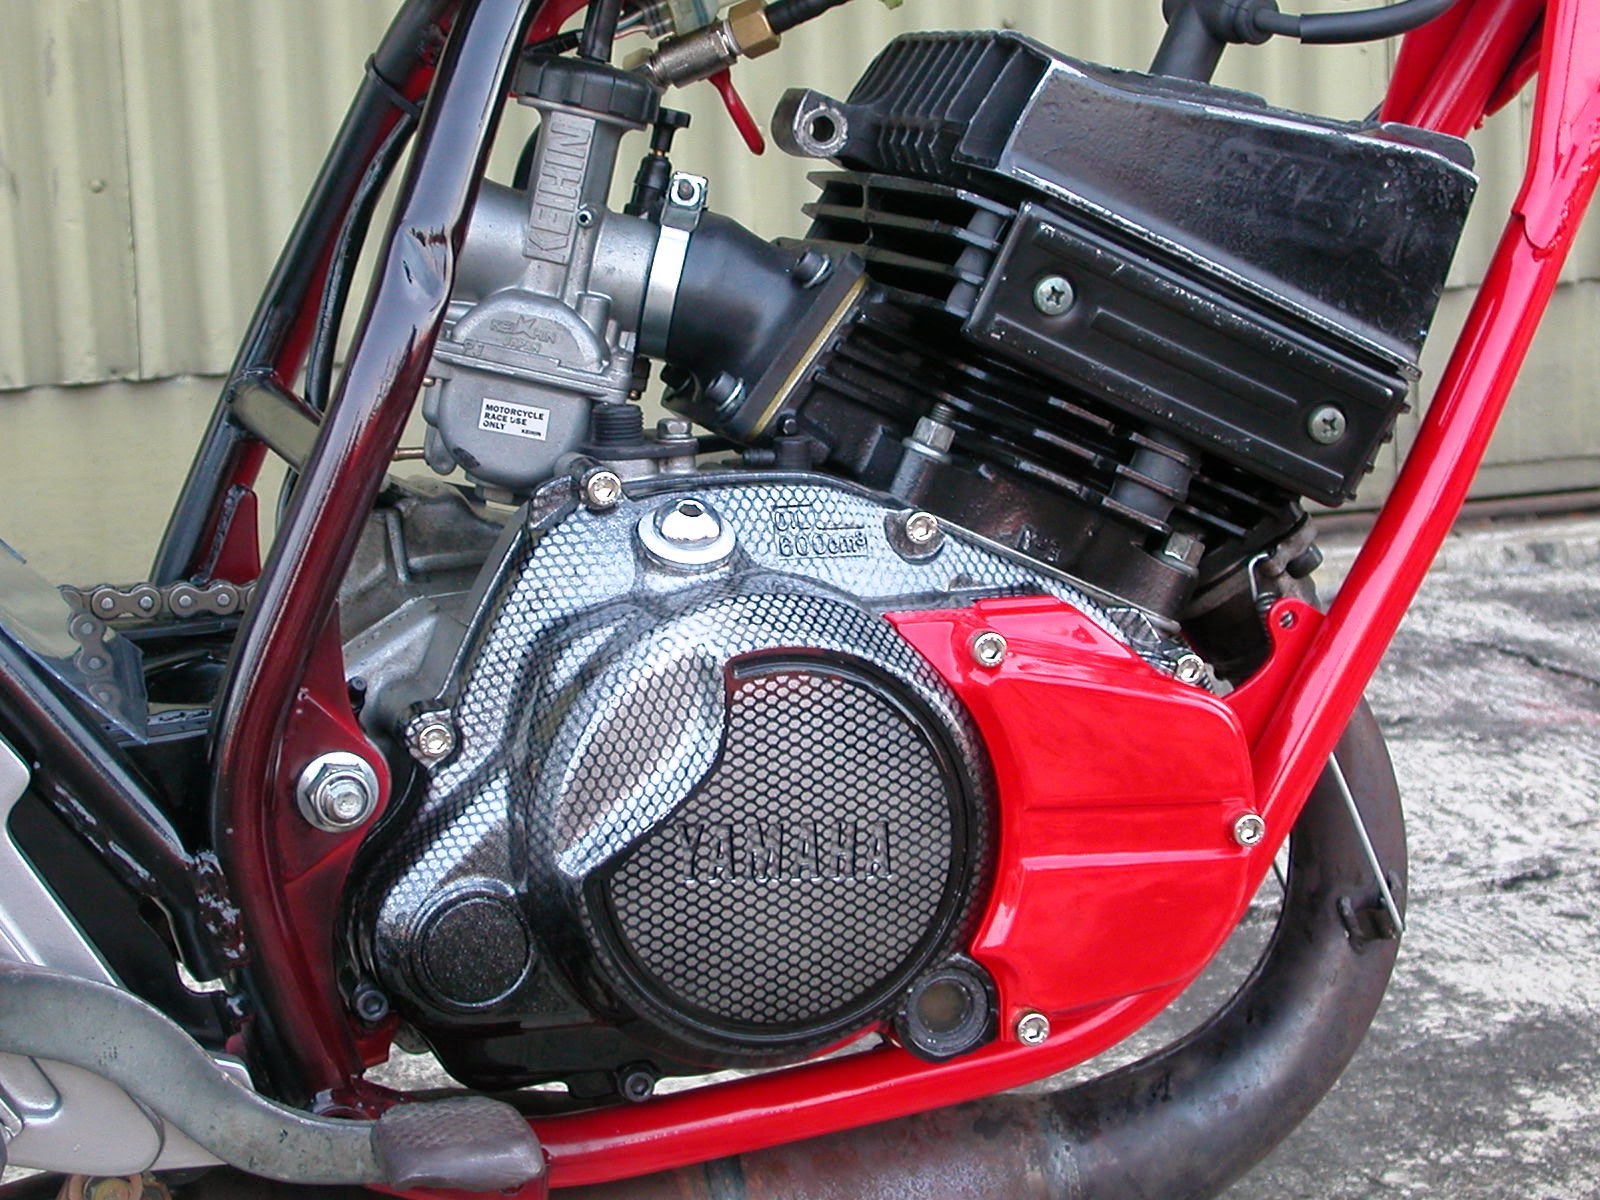 Koleksi Modif Honda Tiger Jadi Harley Terupdate Botol Modifikasi